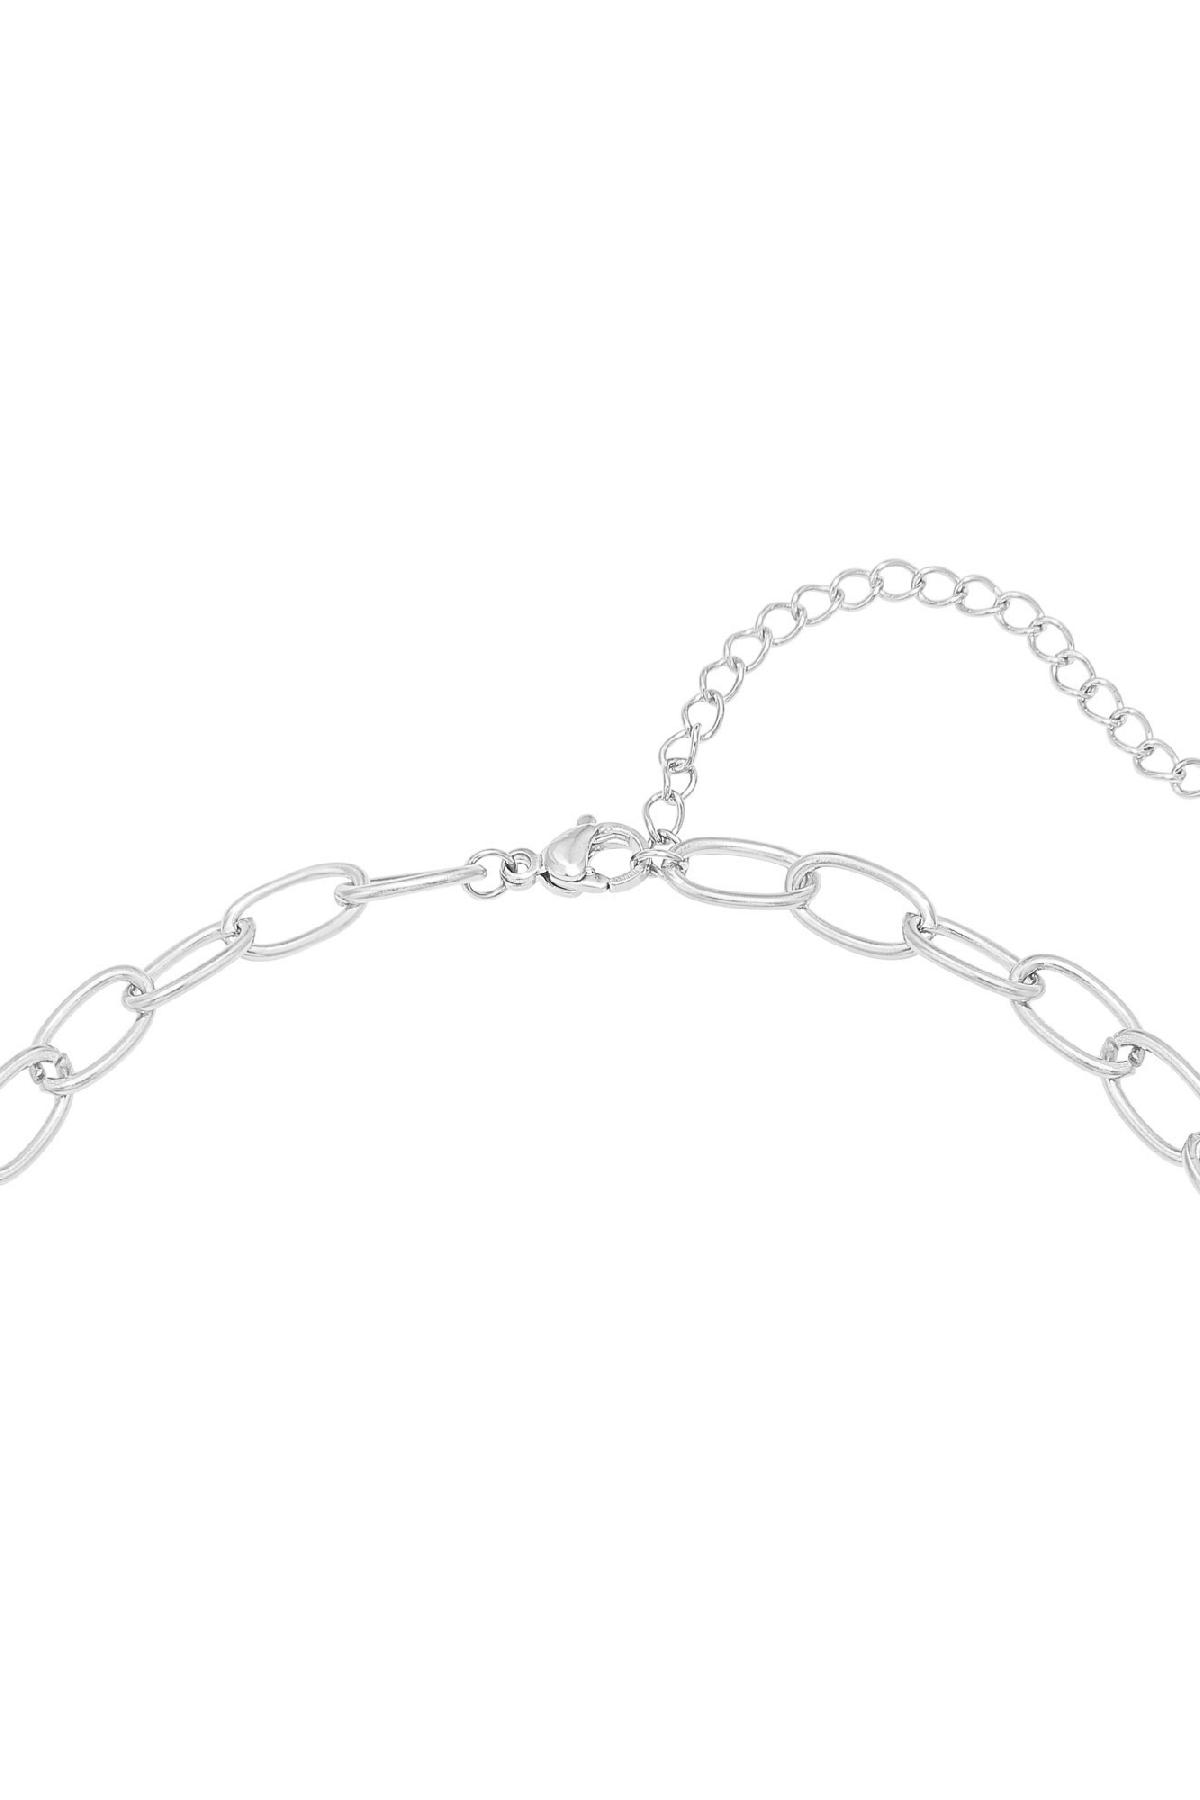 Halskette Beads Wild Silber Edelstahl h5 Bild2